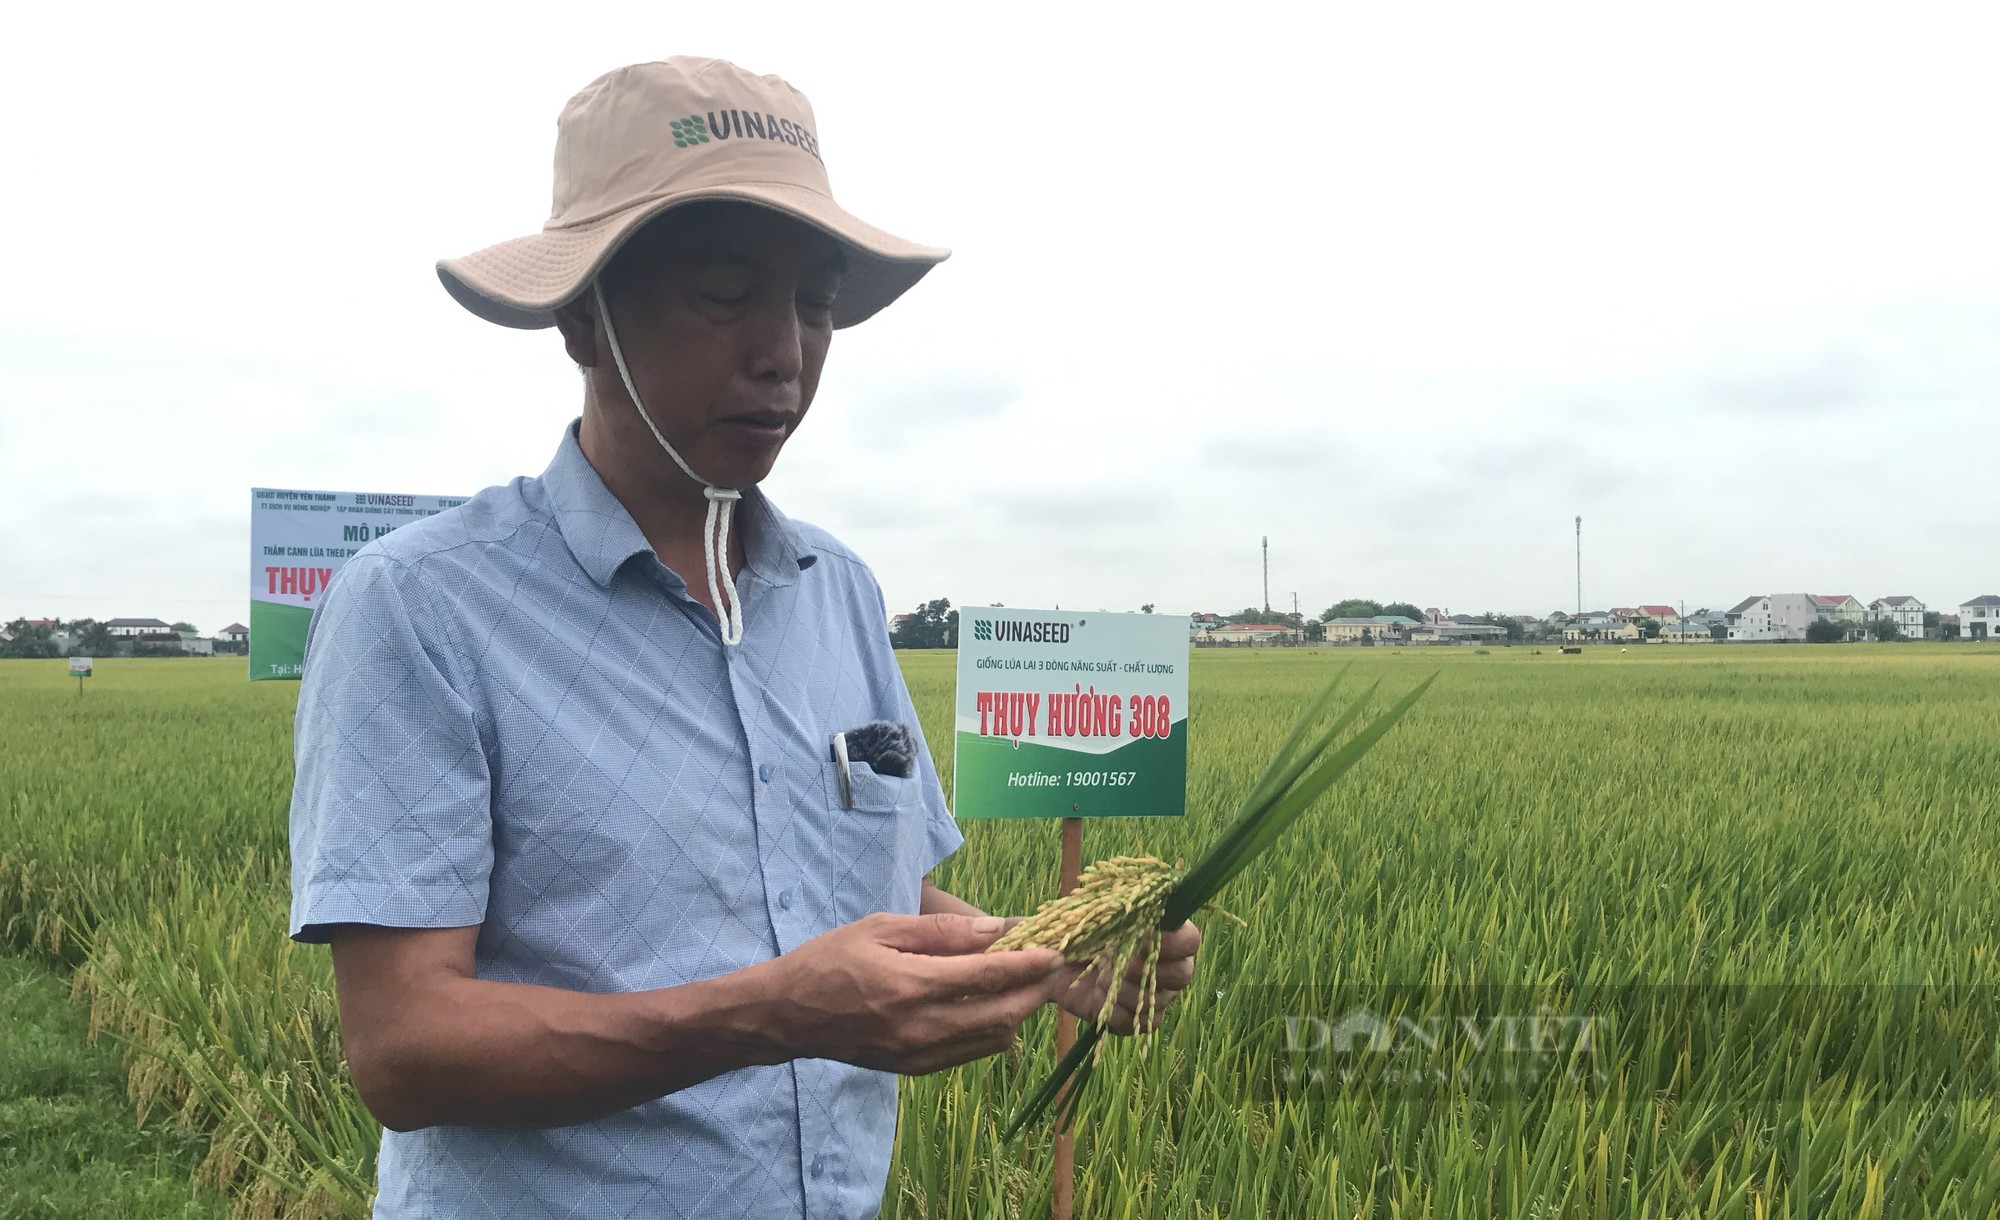 Thụy Hương 308 của Vinaseed khiến nông dân ở huyện Yên Thành, tỉnh Nghệ An bất ngờ khi đẻ khỏe, bông dài, hạt chắc - Ảnh 6.